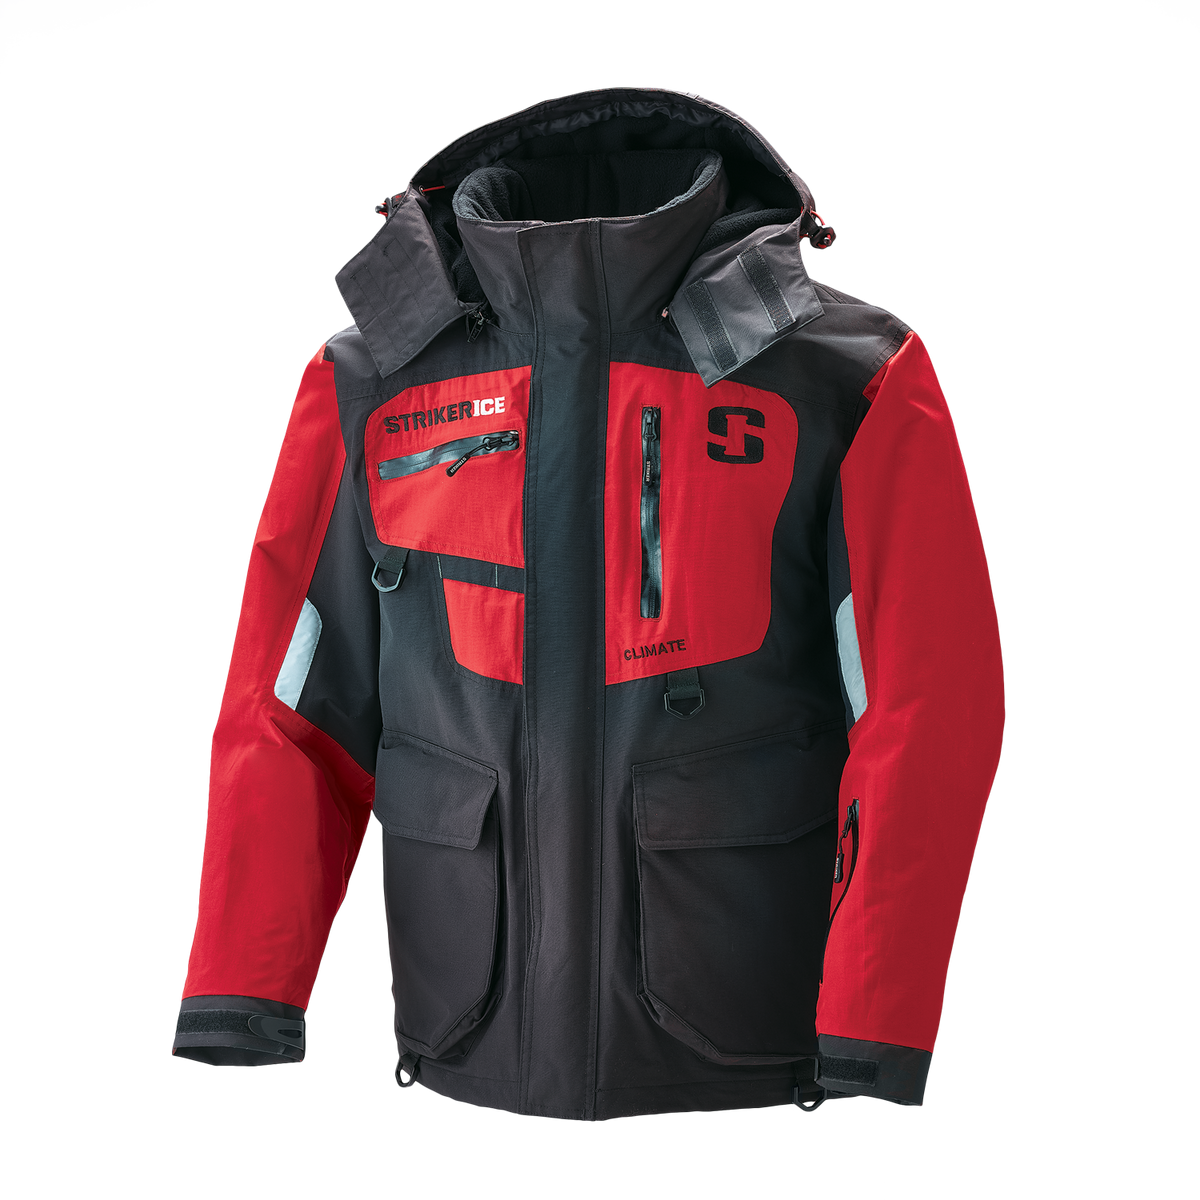 Striker Ice Climate Jacket - Red/Black - Side